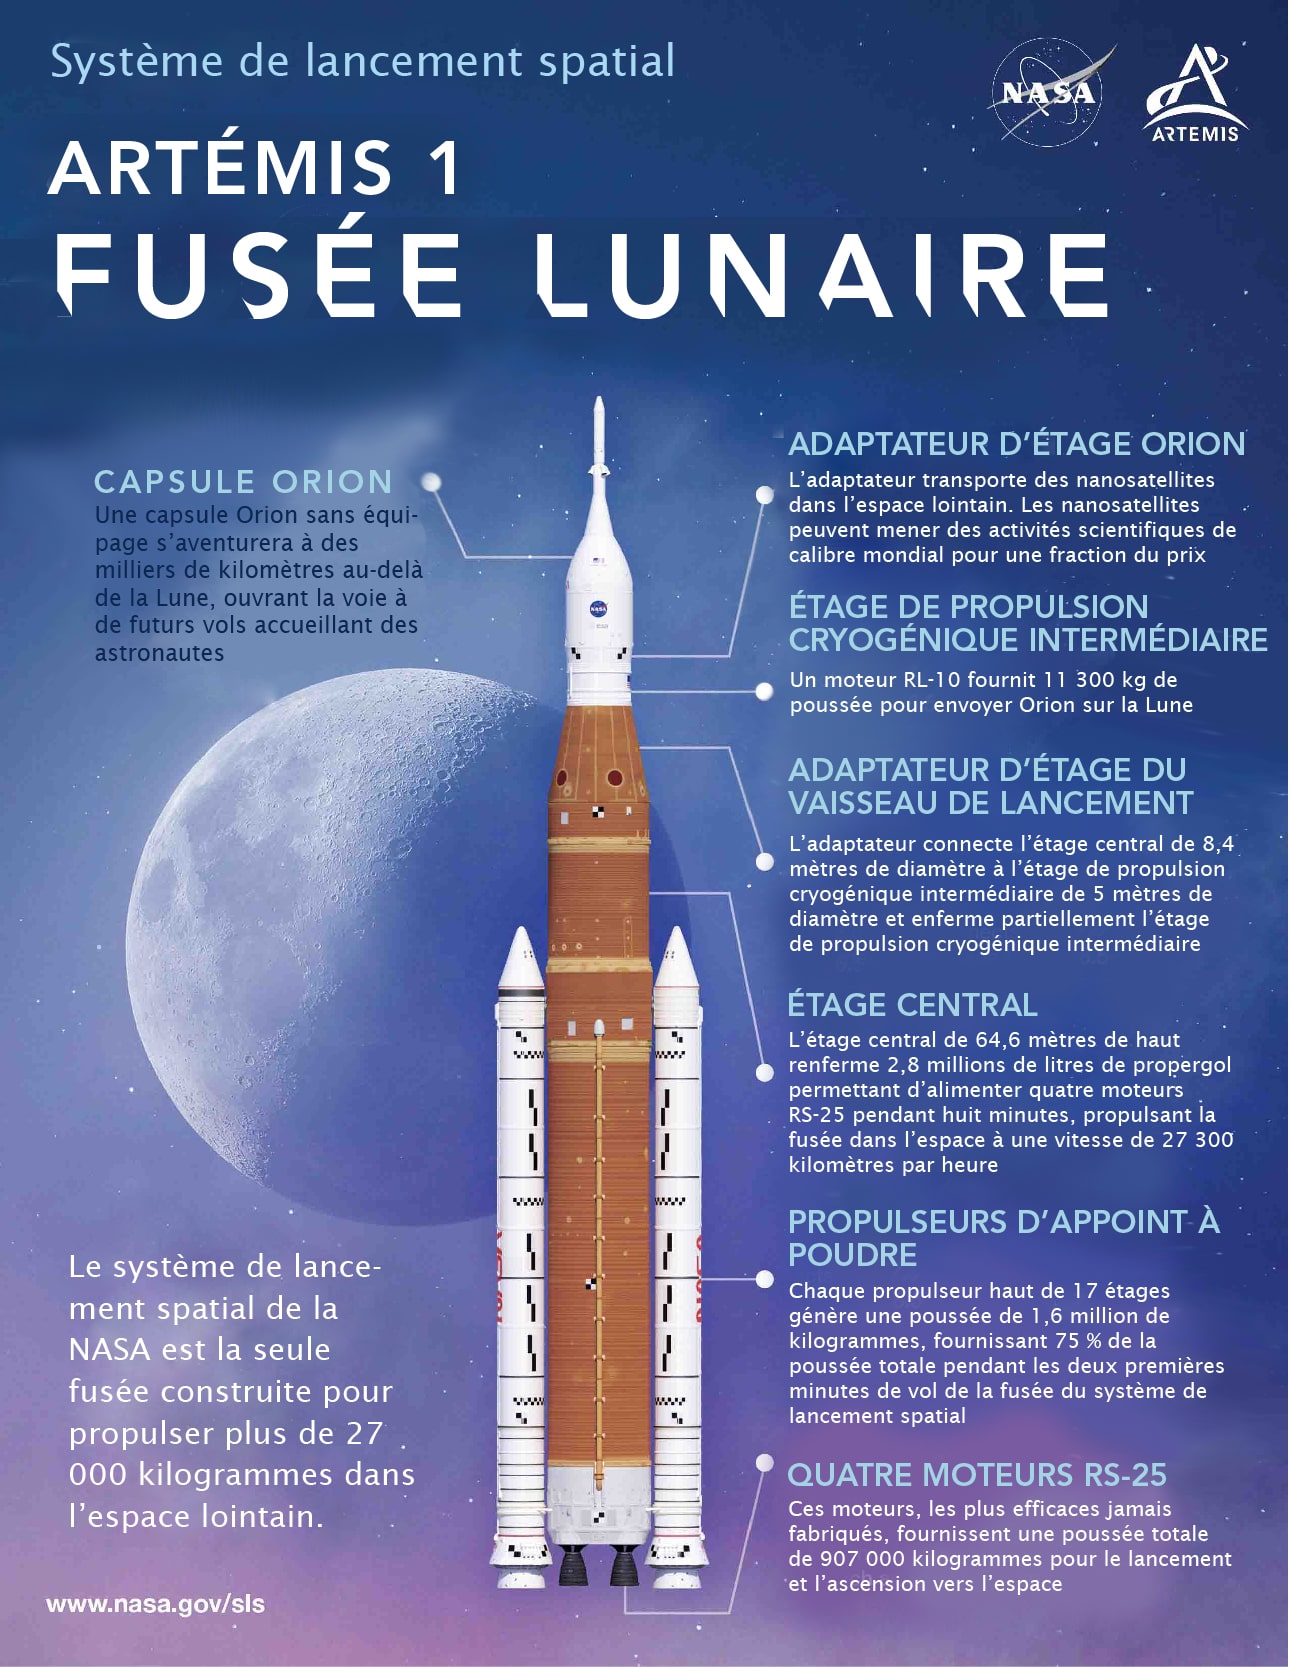 L’illustration montre les différentes parties de la fusée lunaire d’Artémis 1